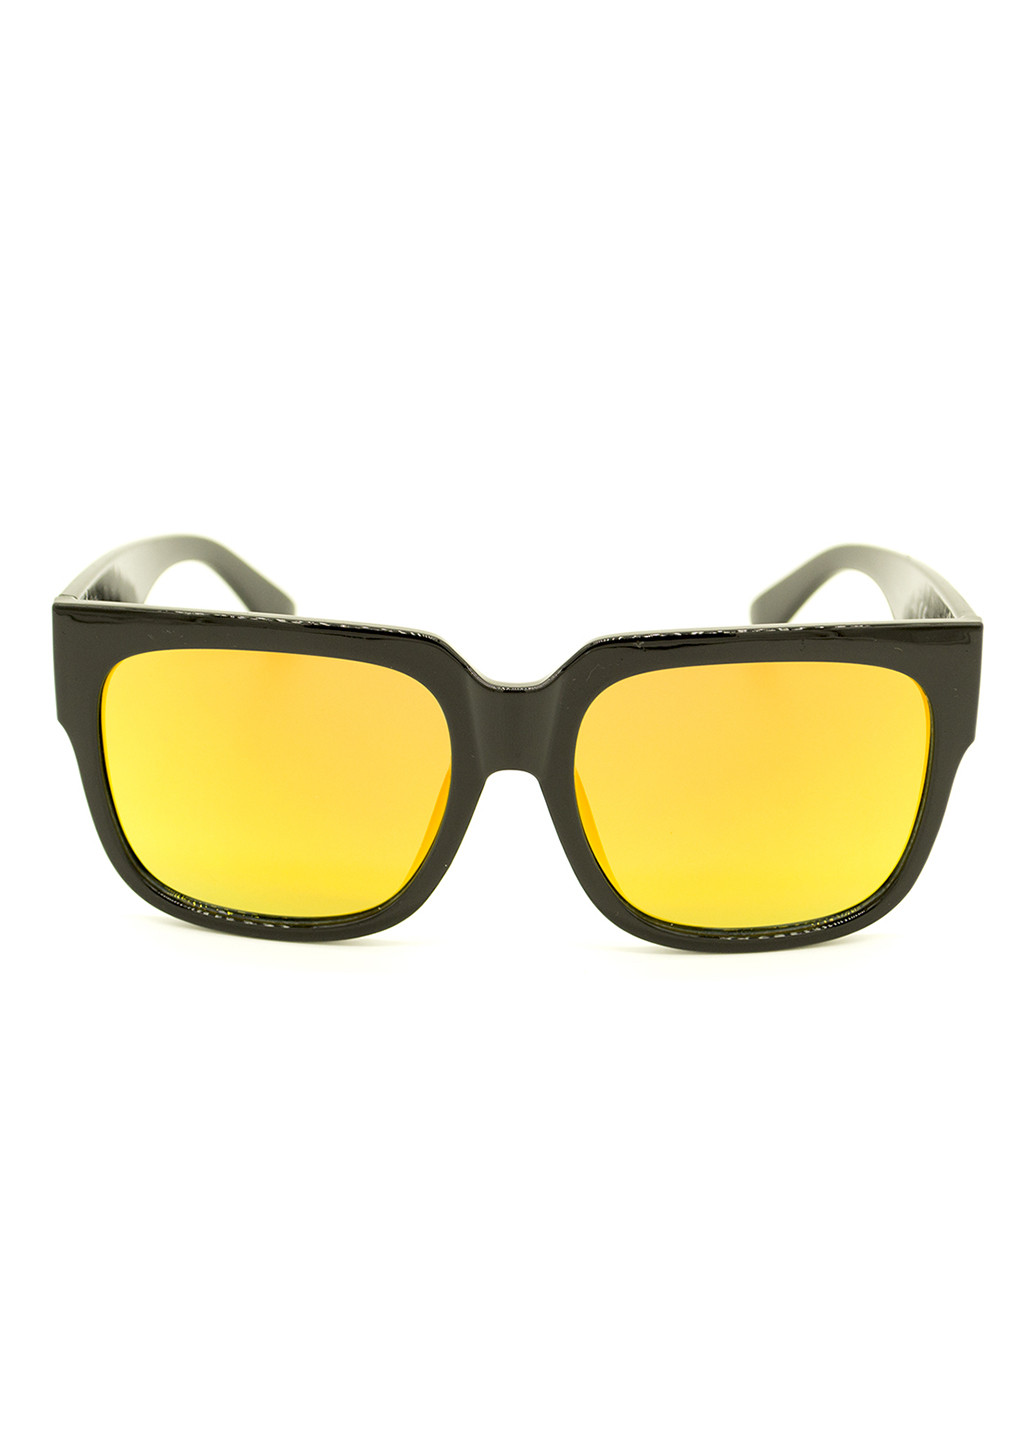 Солнцезащитные очки Dasoon Vision жёлтые